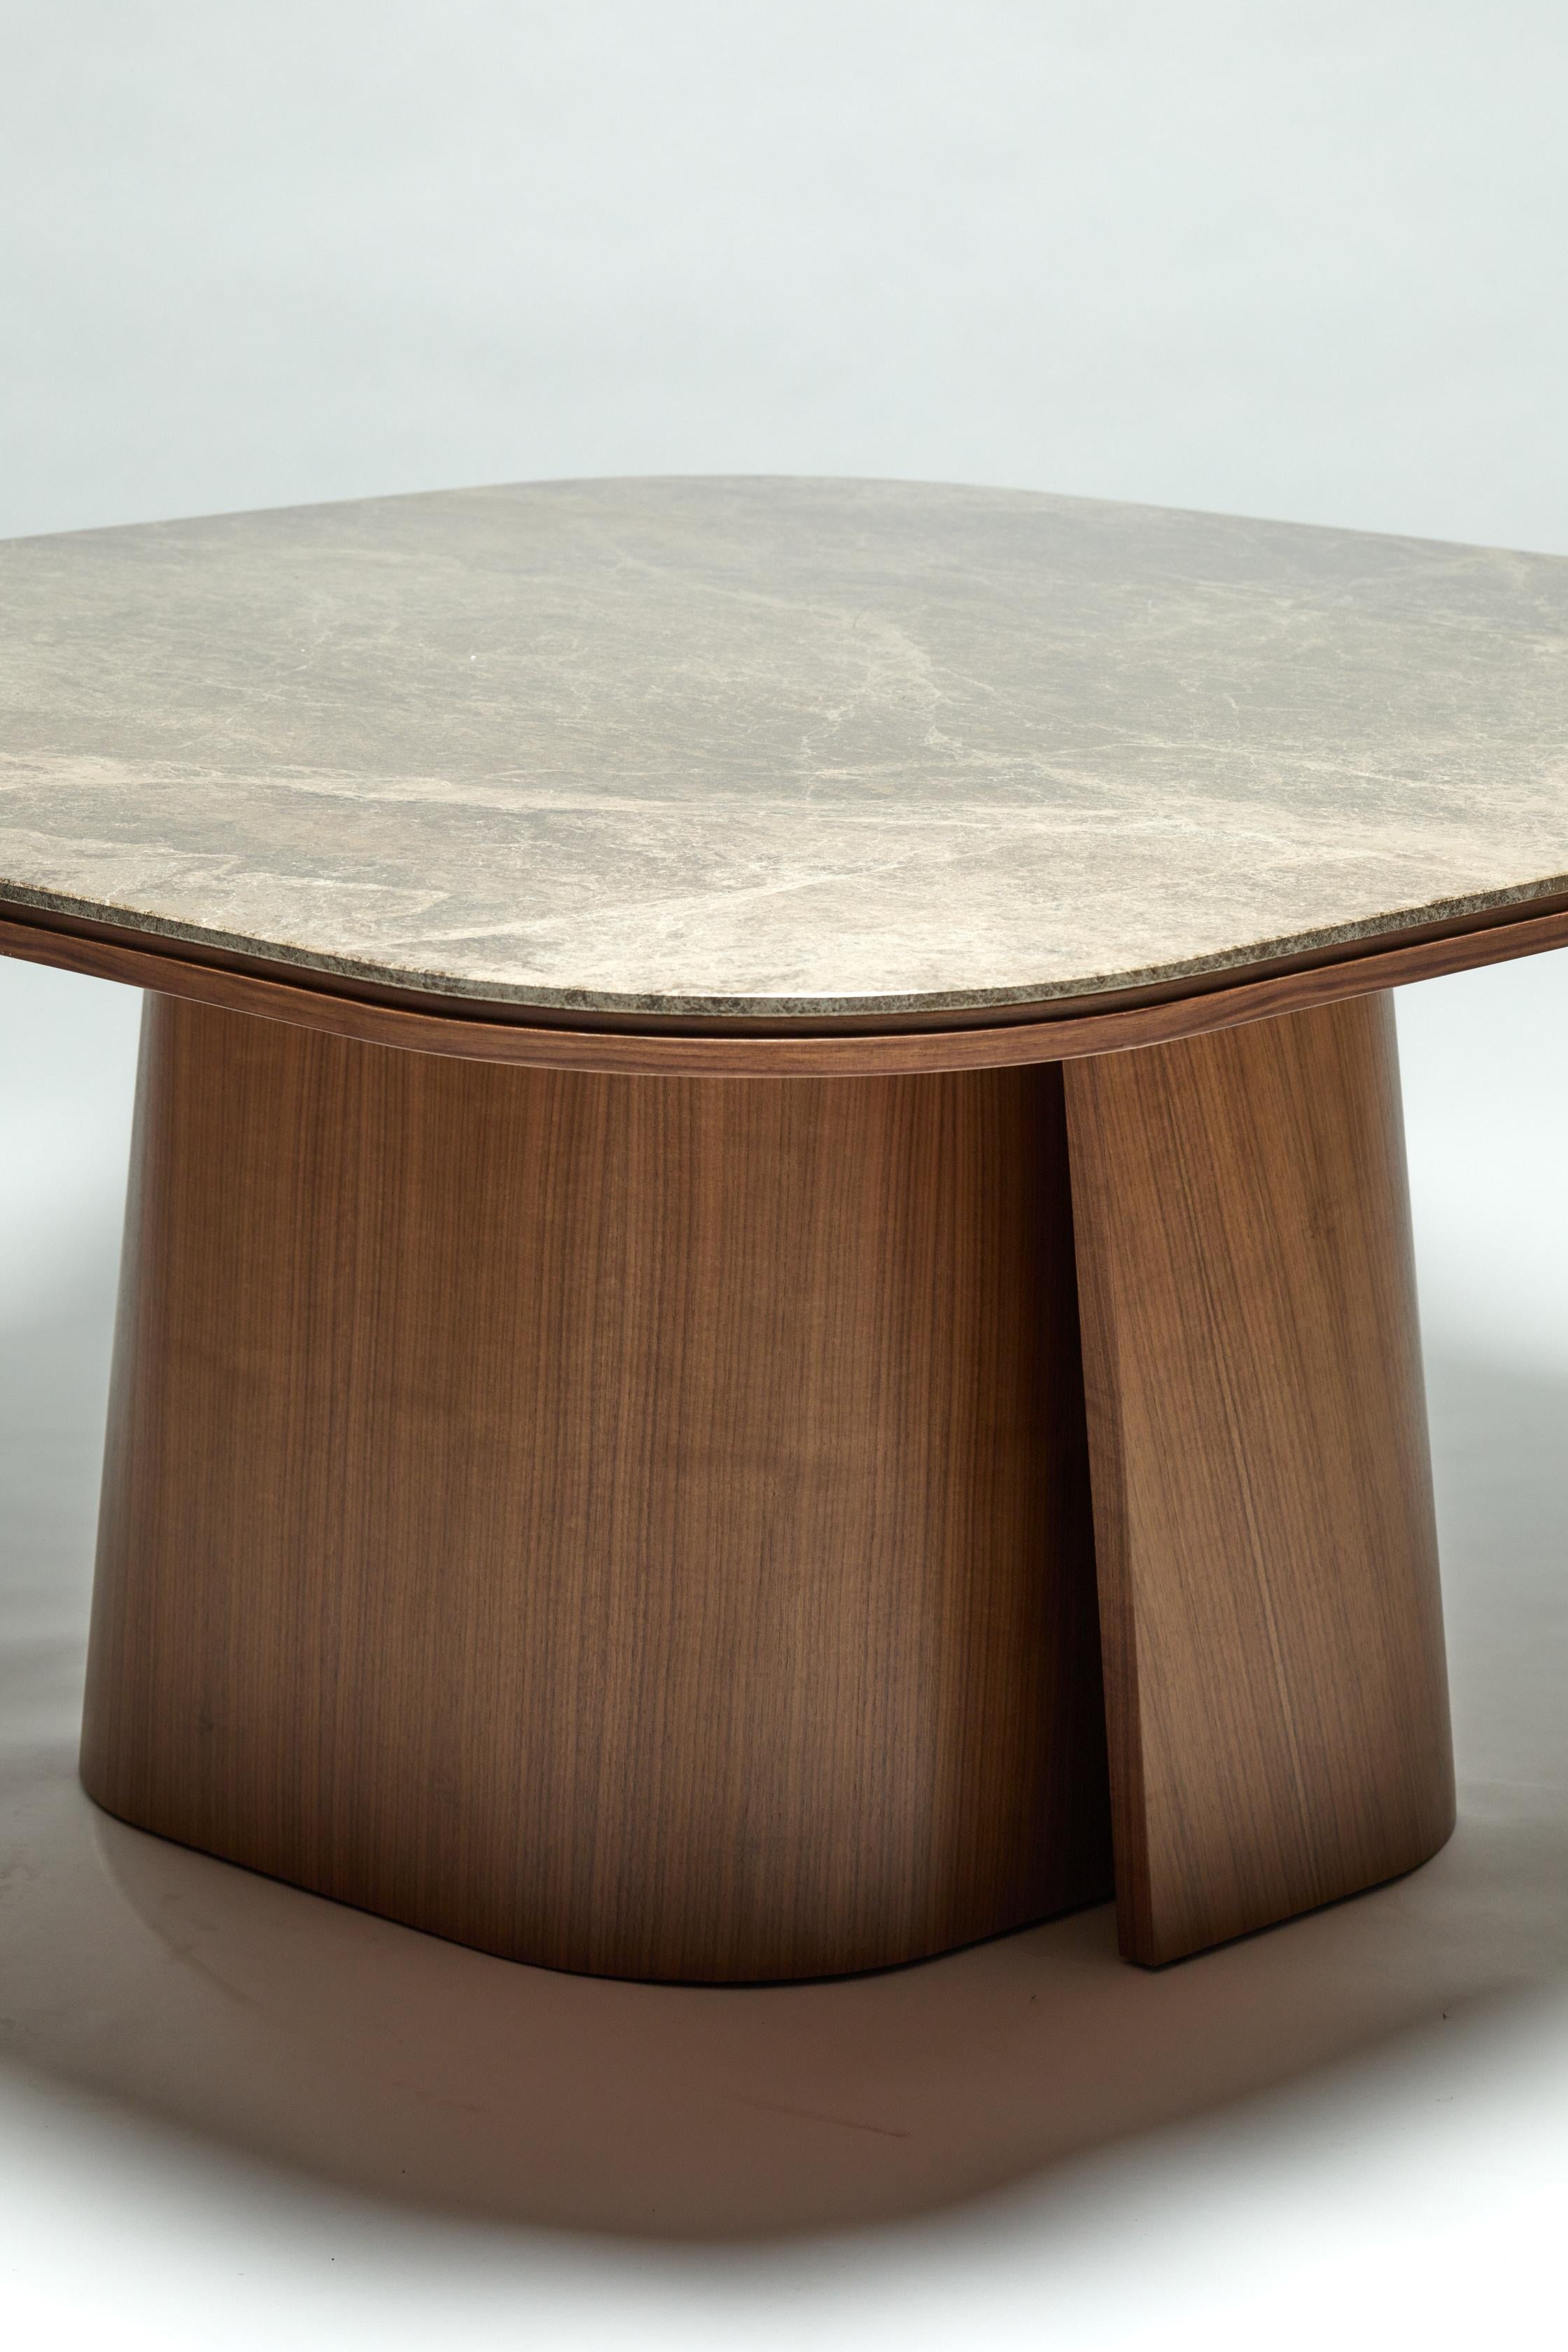 Marbre de Carrare Table de salle à manger, OOMA, par Reda Amalou Design, 2020, marbre de Carrare, 140 cm en vente